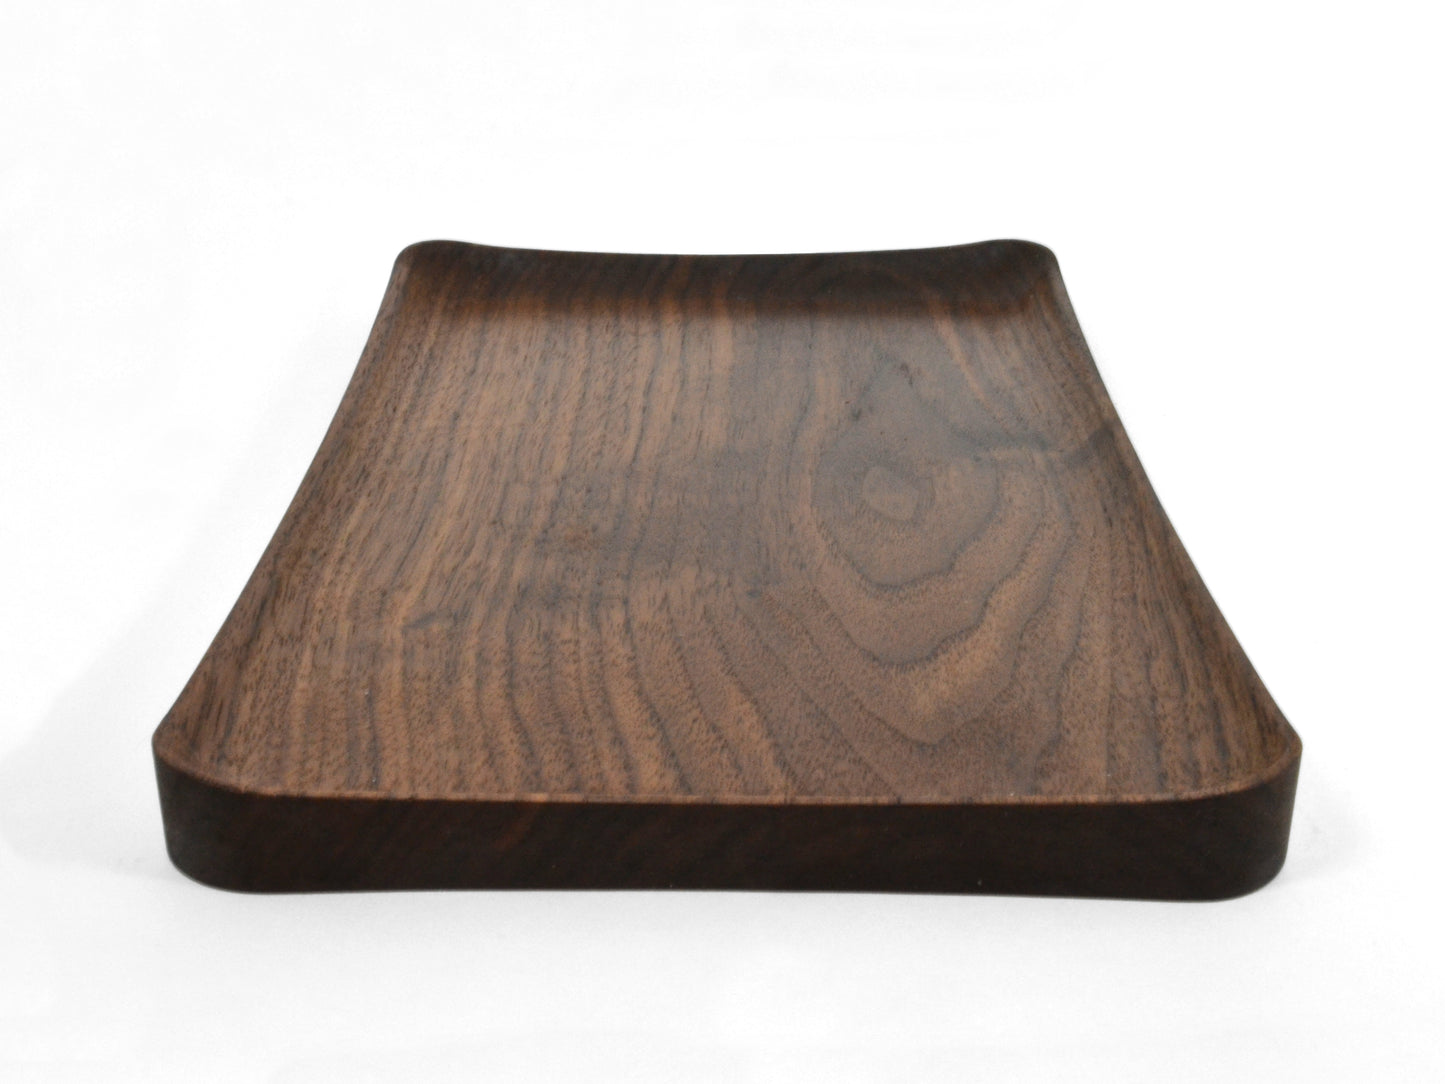 unique curvy dark wooden tray for EDC